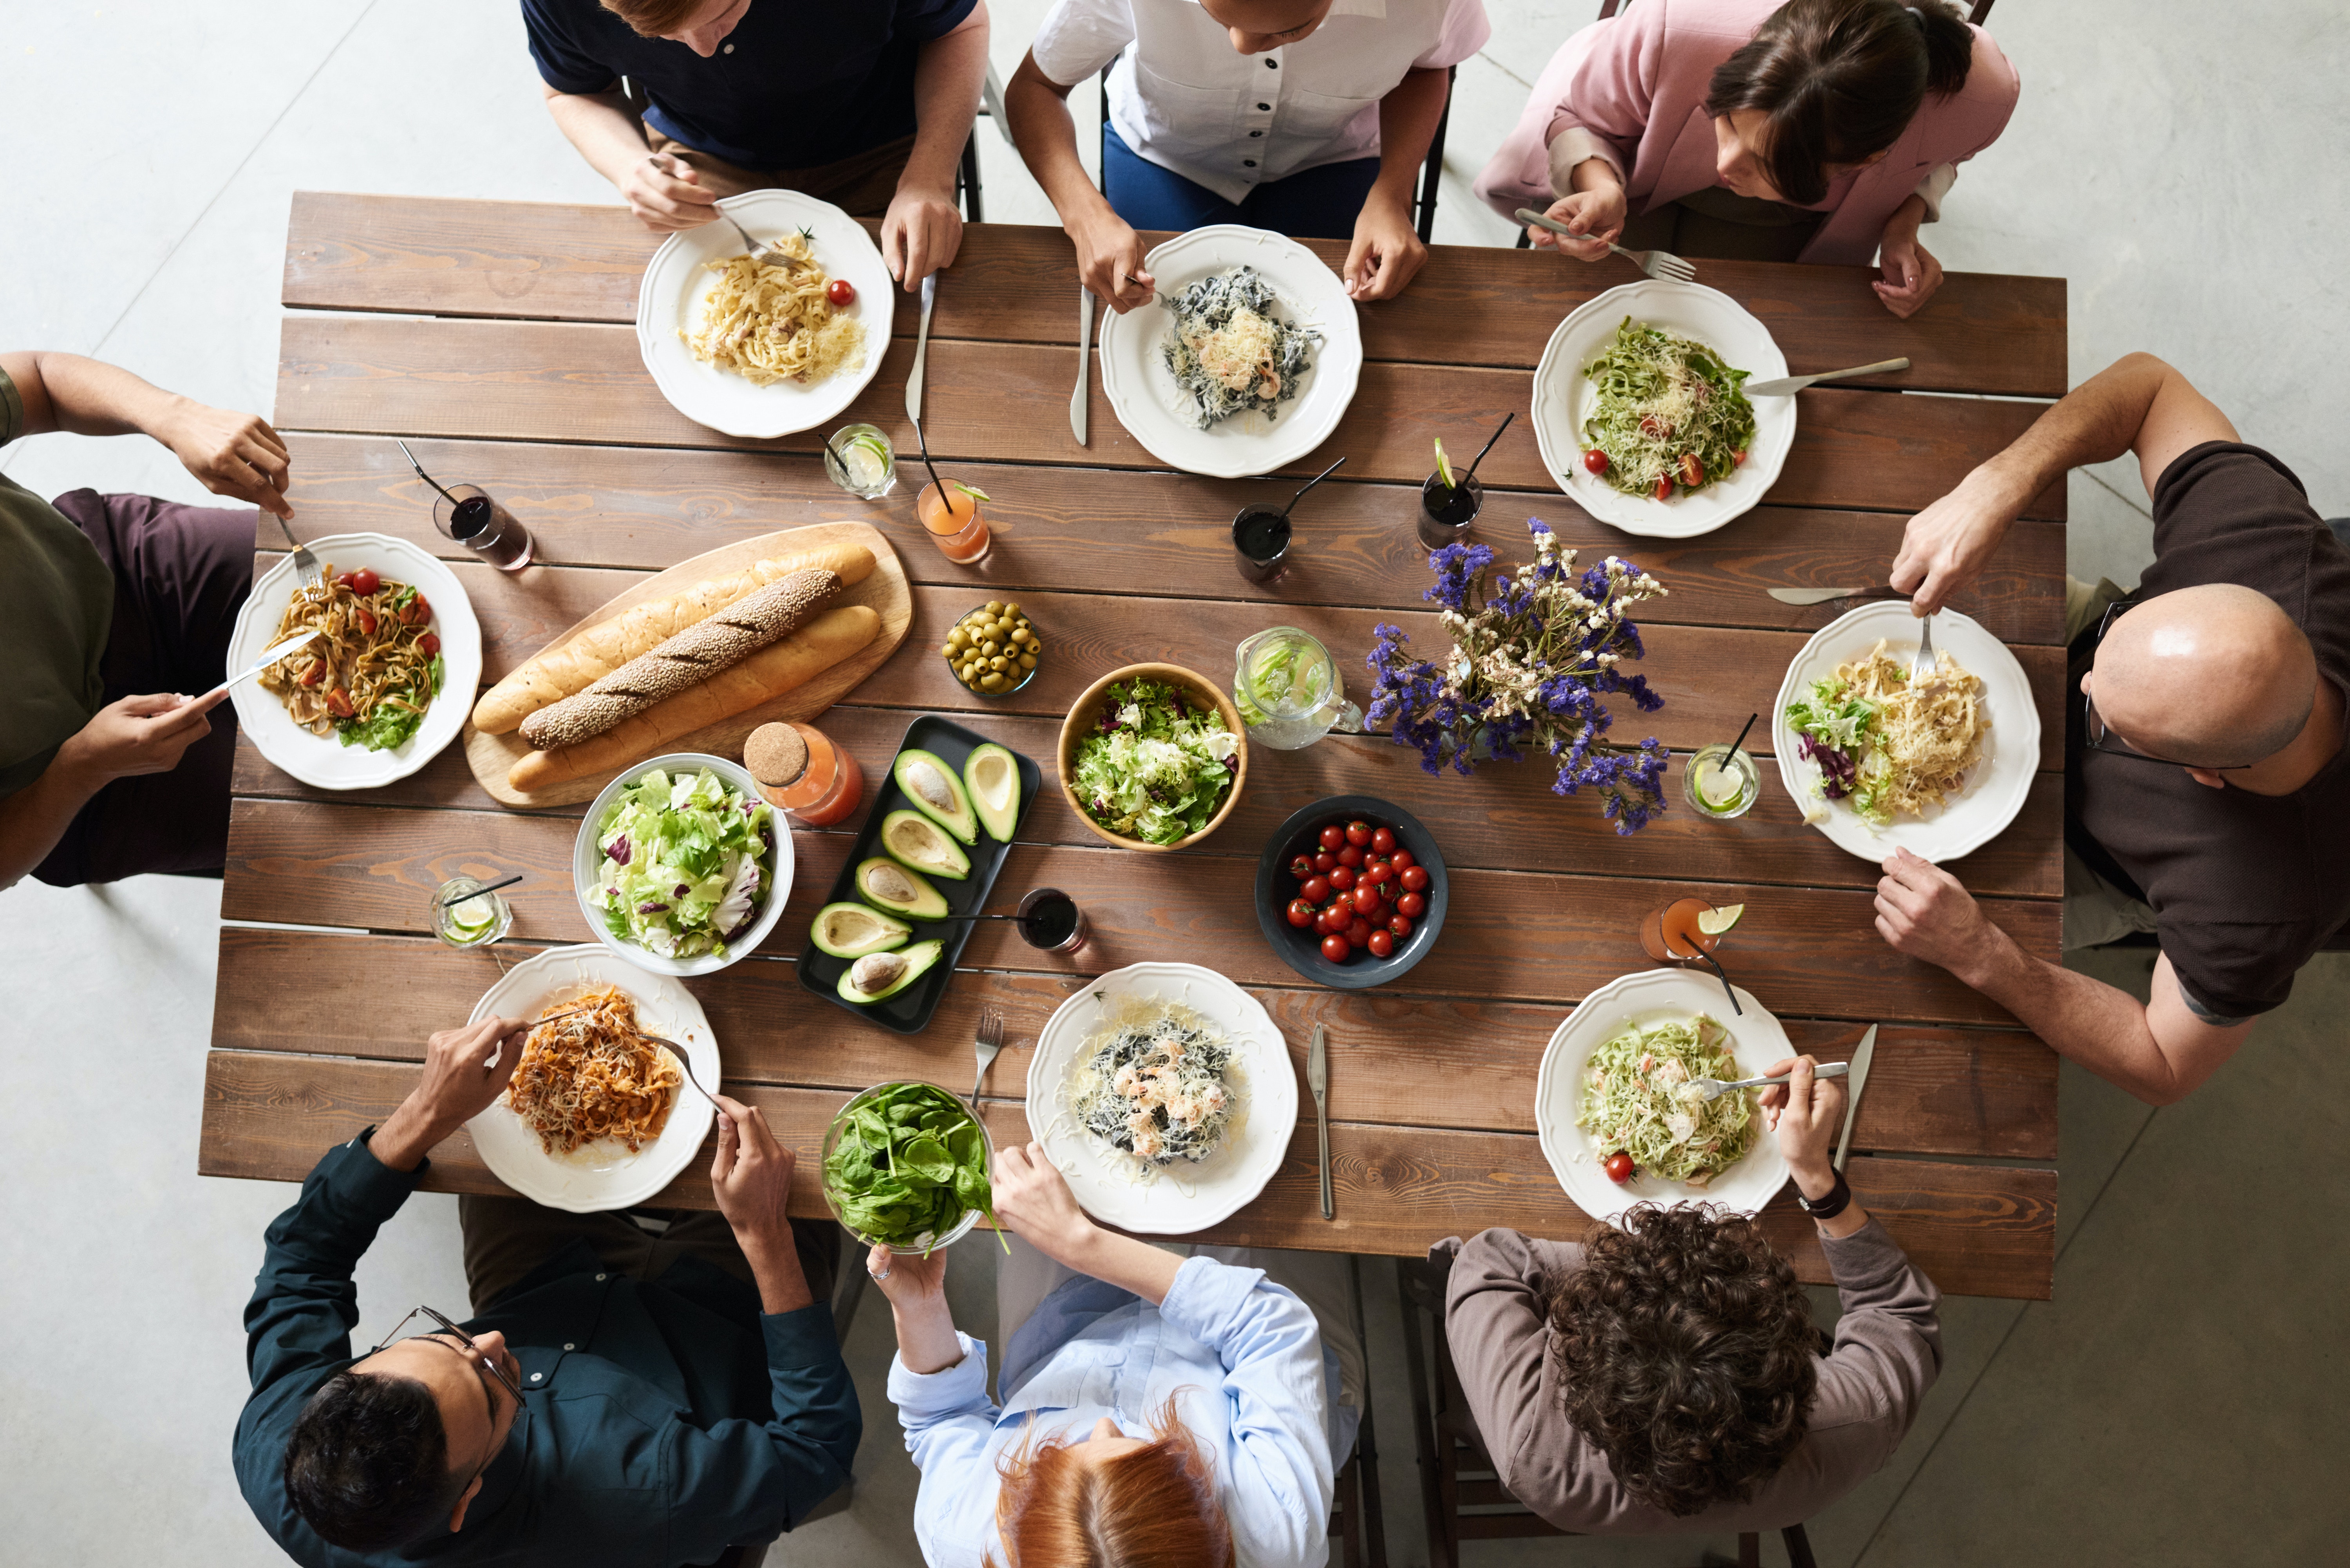 रात्री जेवण चांगले पचते. याचे कारण म्हणजे जसजसा दिवस पुढे सरकतो, तसतसे आतड्यांमधील ऍसिडस् आणि एन्झाईम्सचा स्राव कमी होतो.